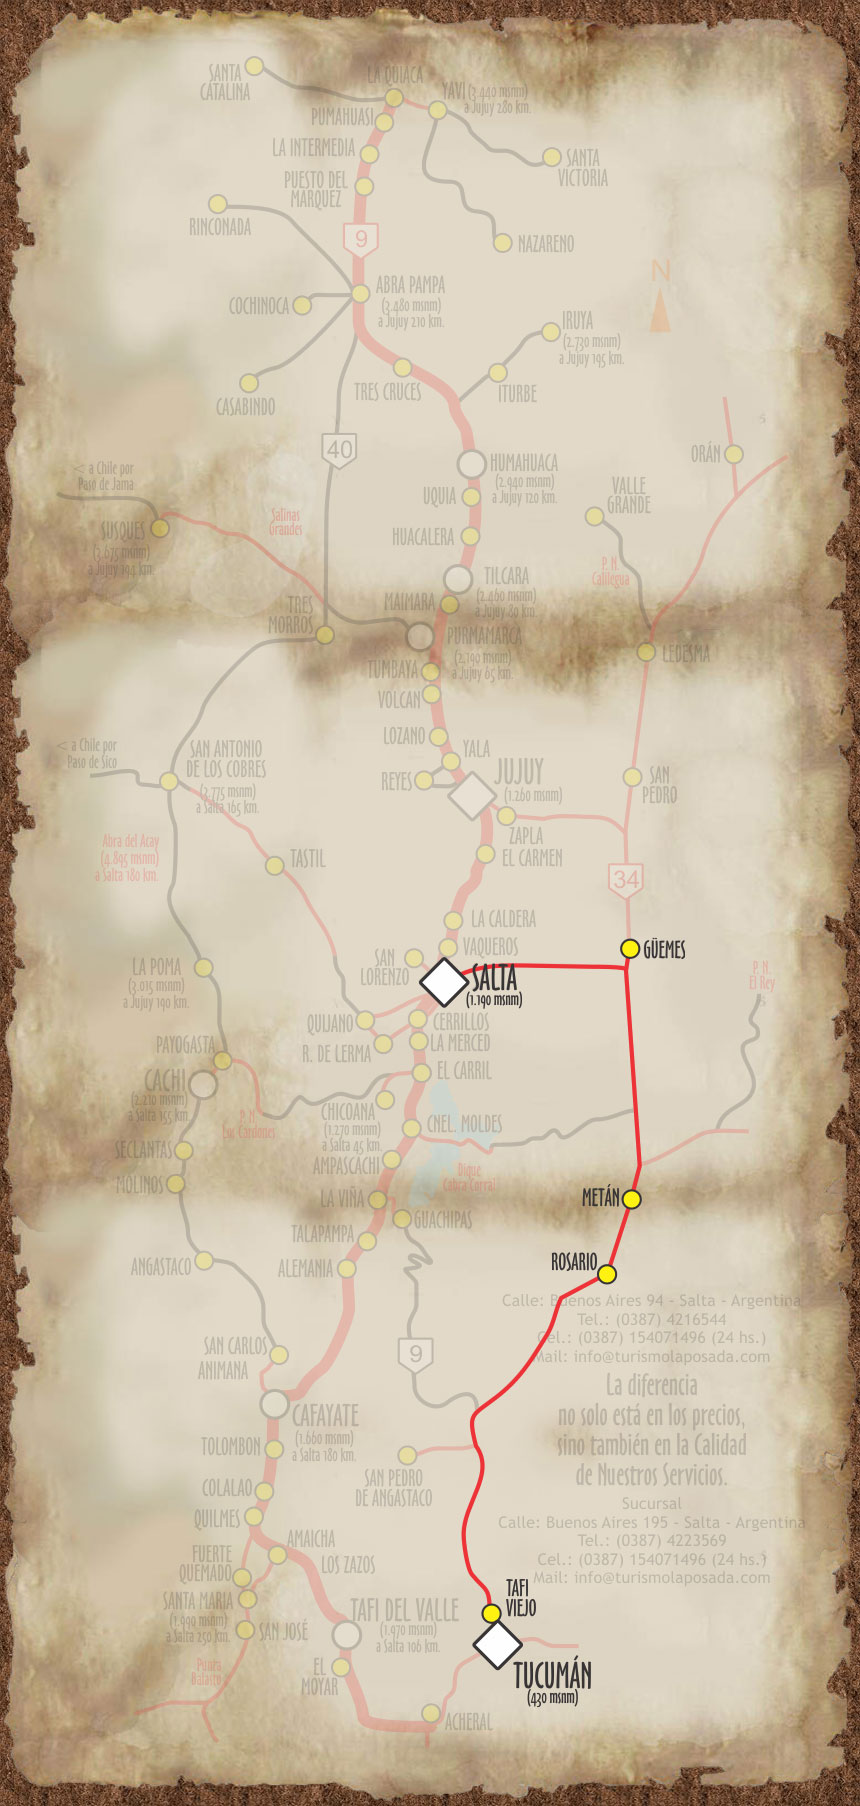 Imagen, con el mapa personalizado, del recorrido a la provincia de Tucumán.